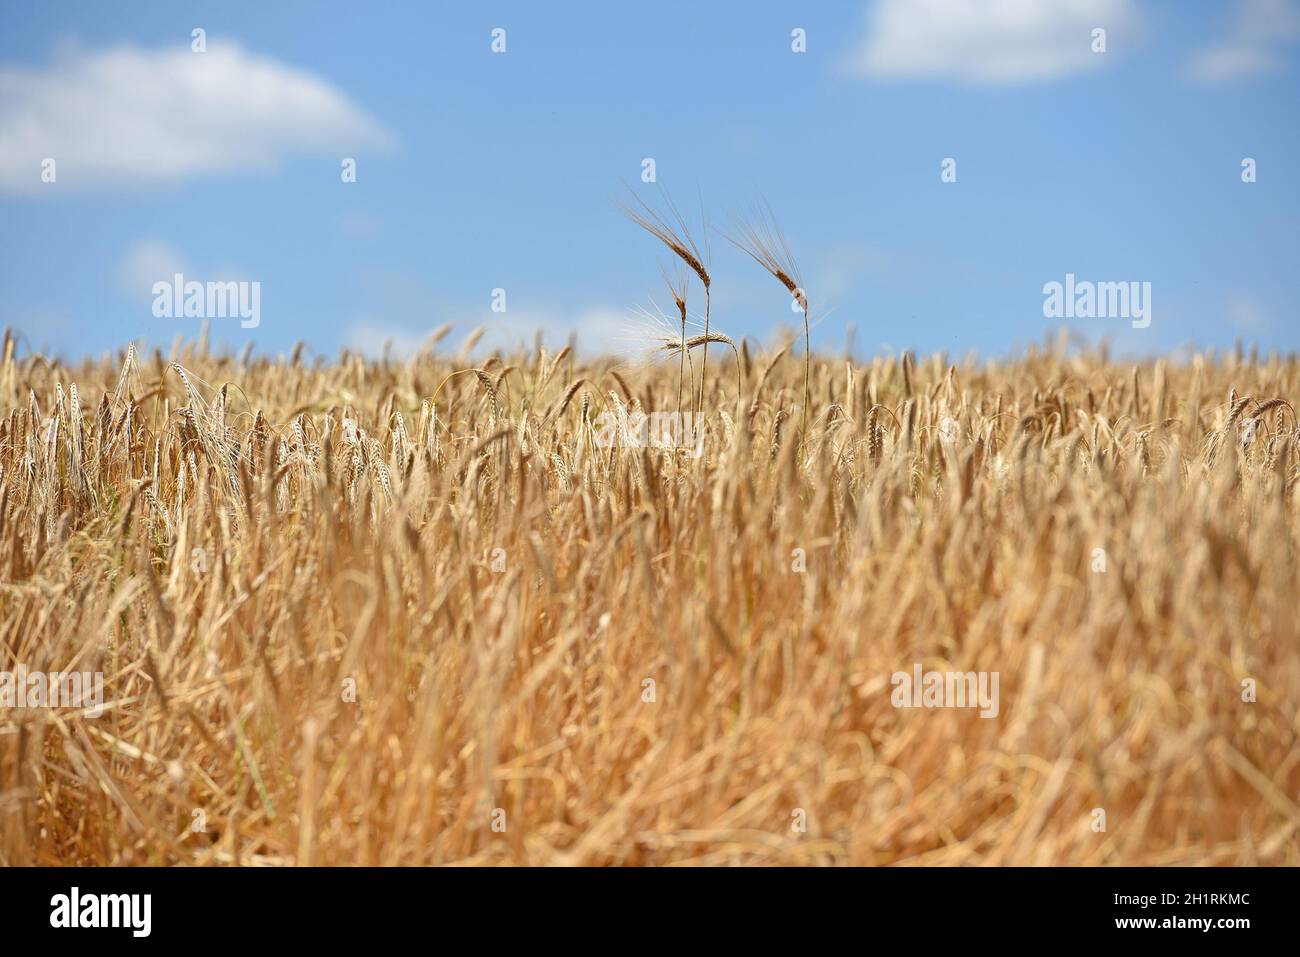 Zum Ernten der Wintergerste wird ein Mähdrescher eingesetzt. - A combine harvester is used to harvest the winter barley. Stock Photo